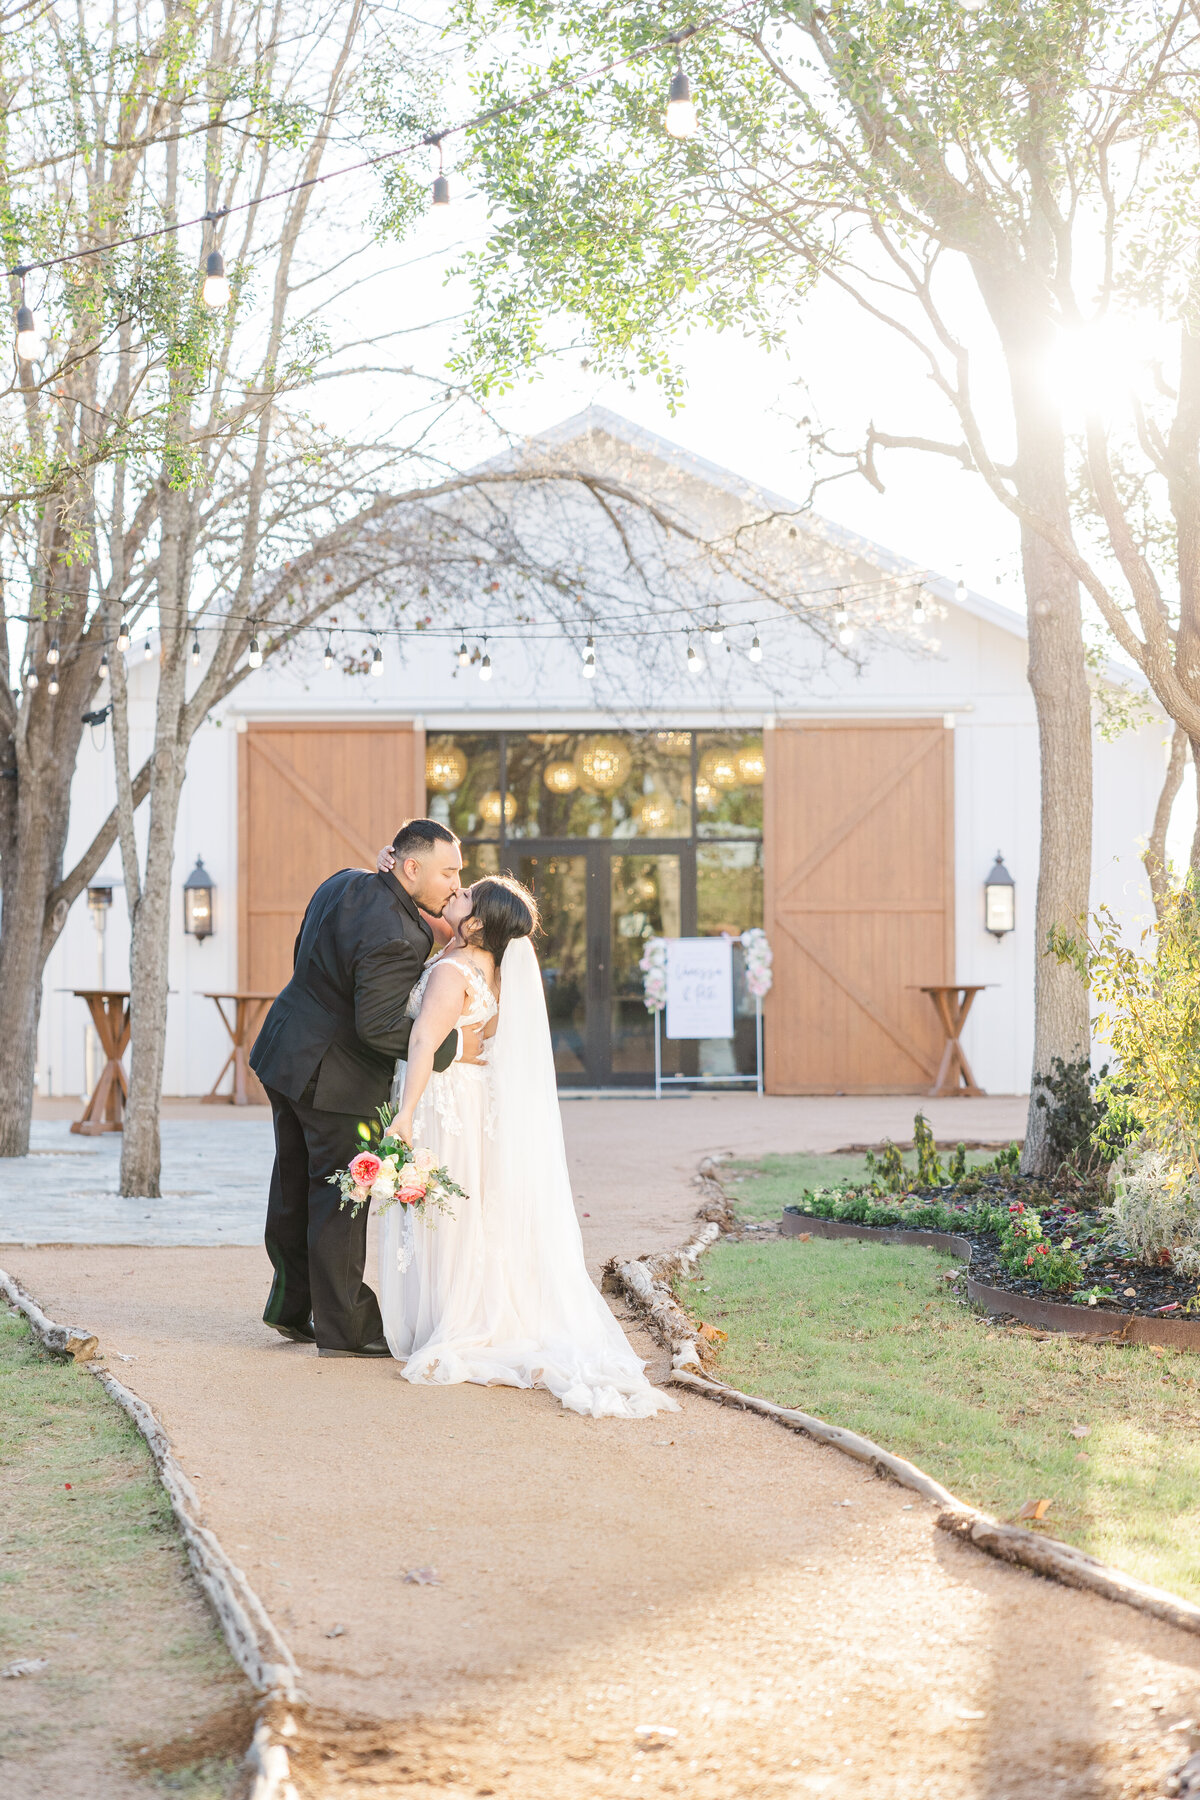 San Antonio wedding photographer captures bride and groom outside a San Antonio wedding venue kissing.